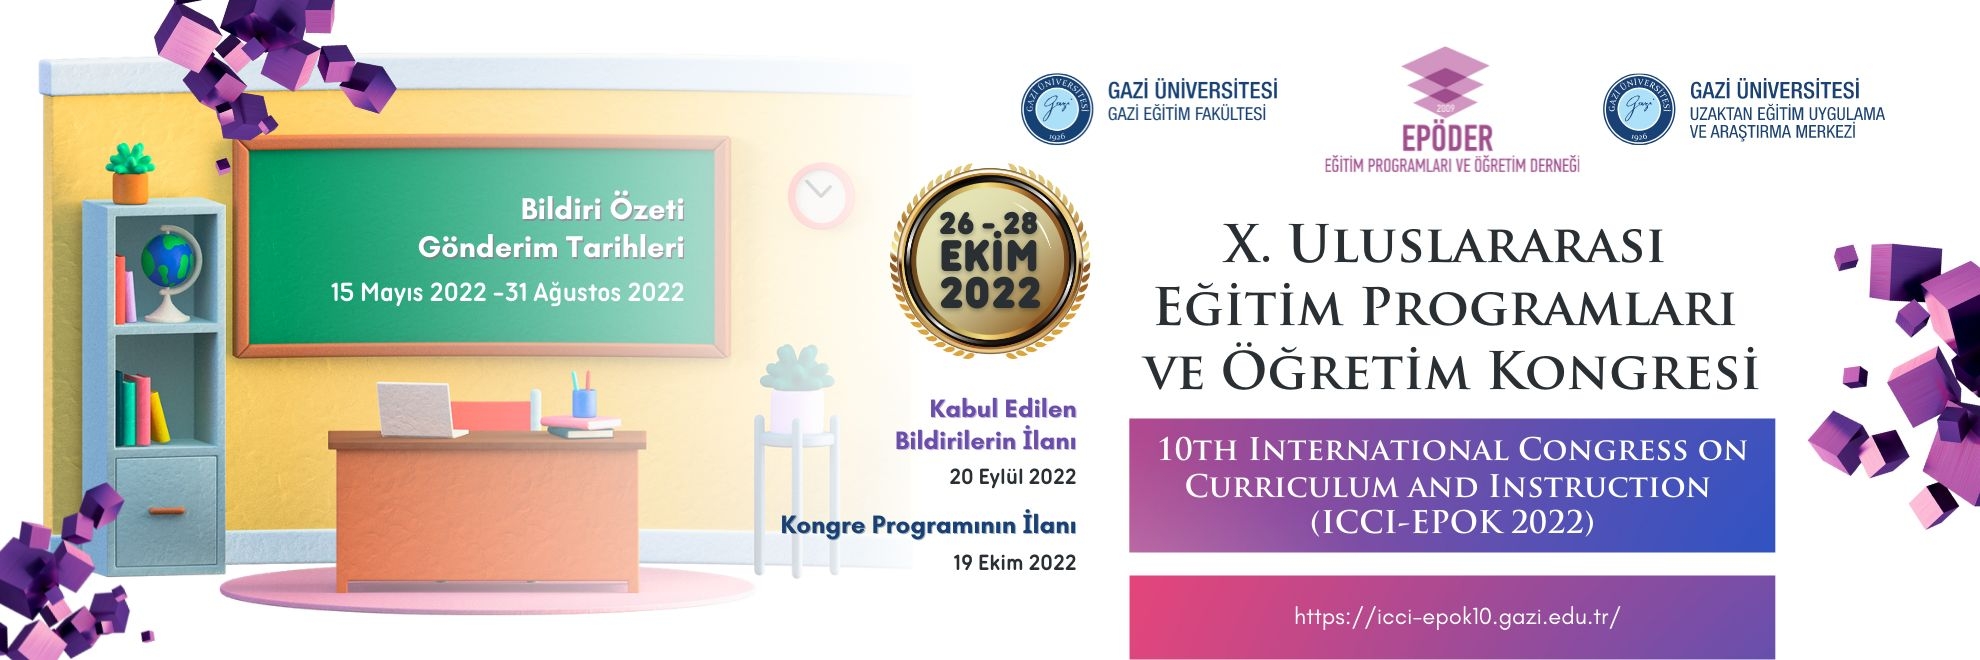 X. Uluslararası Eğitim Programları ve Öğretim Kongresi-1